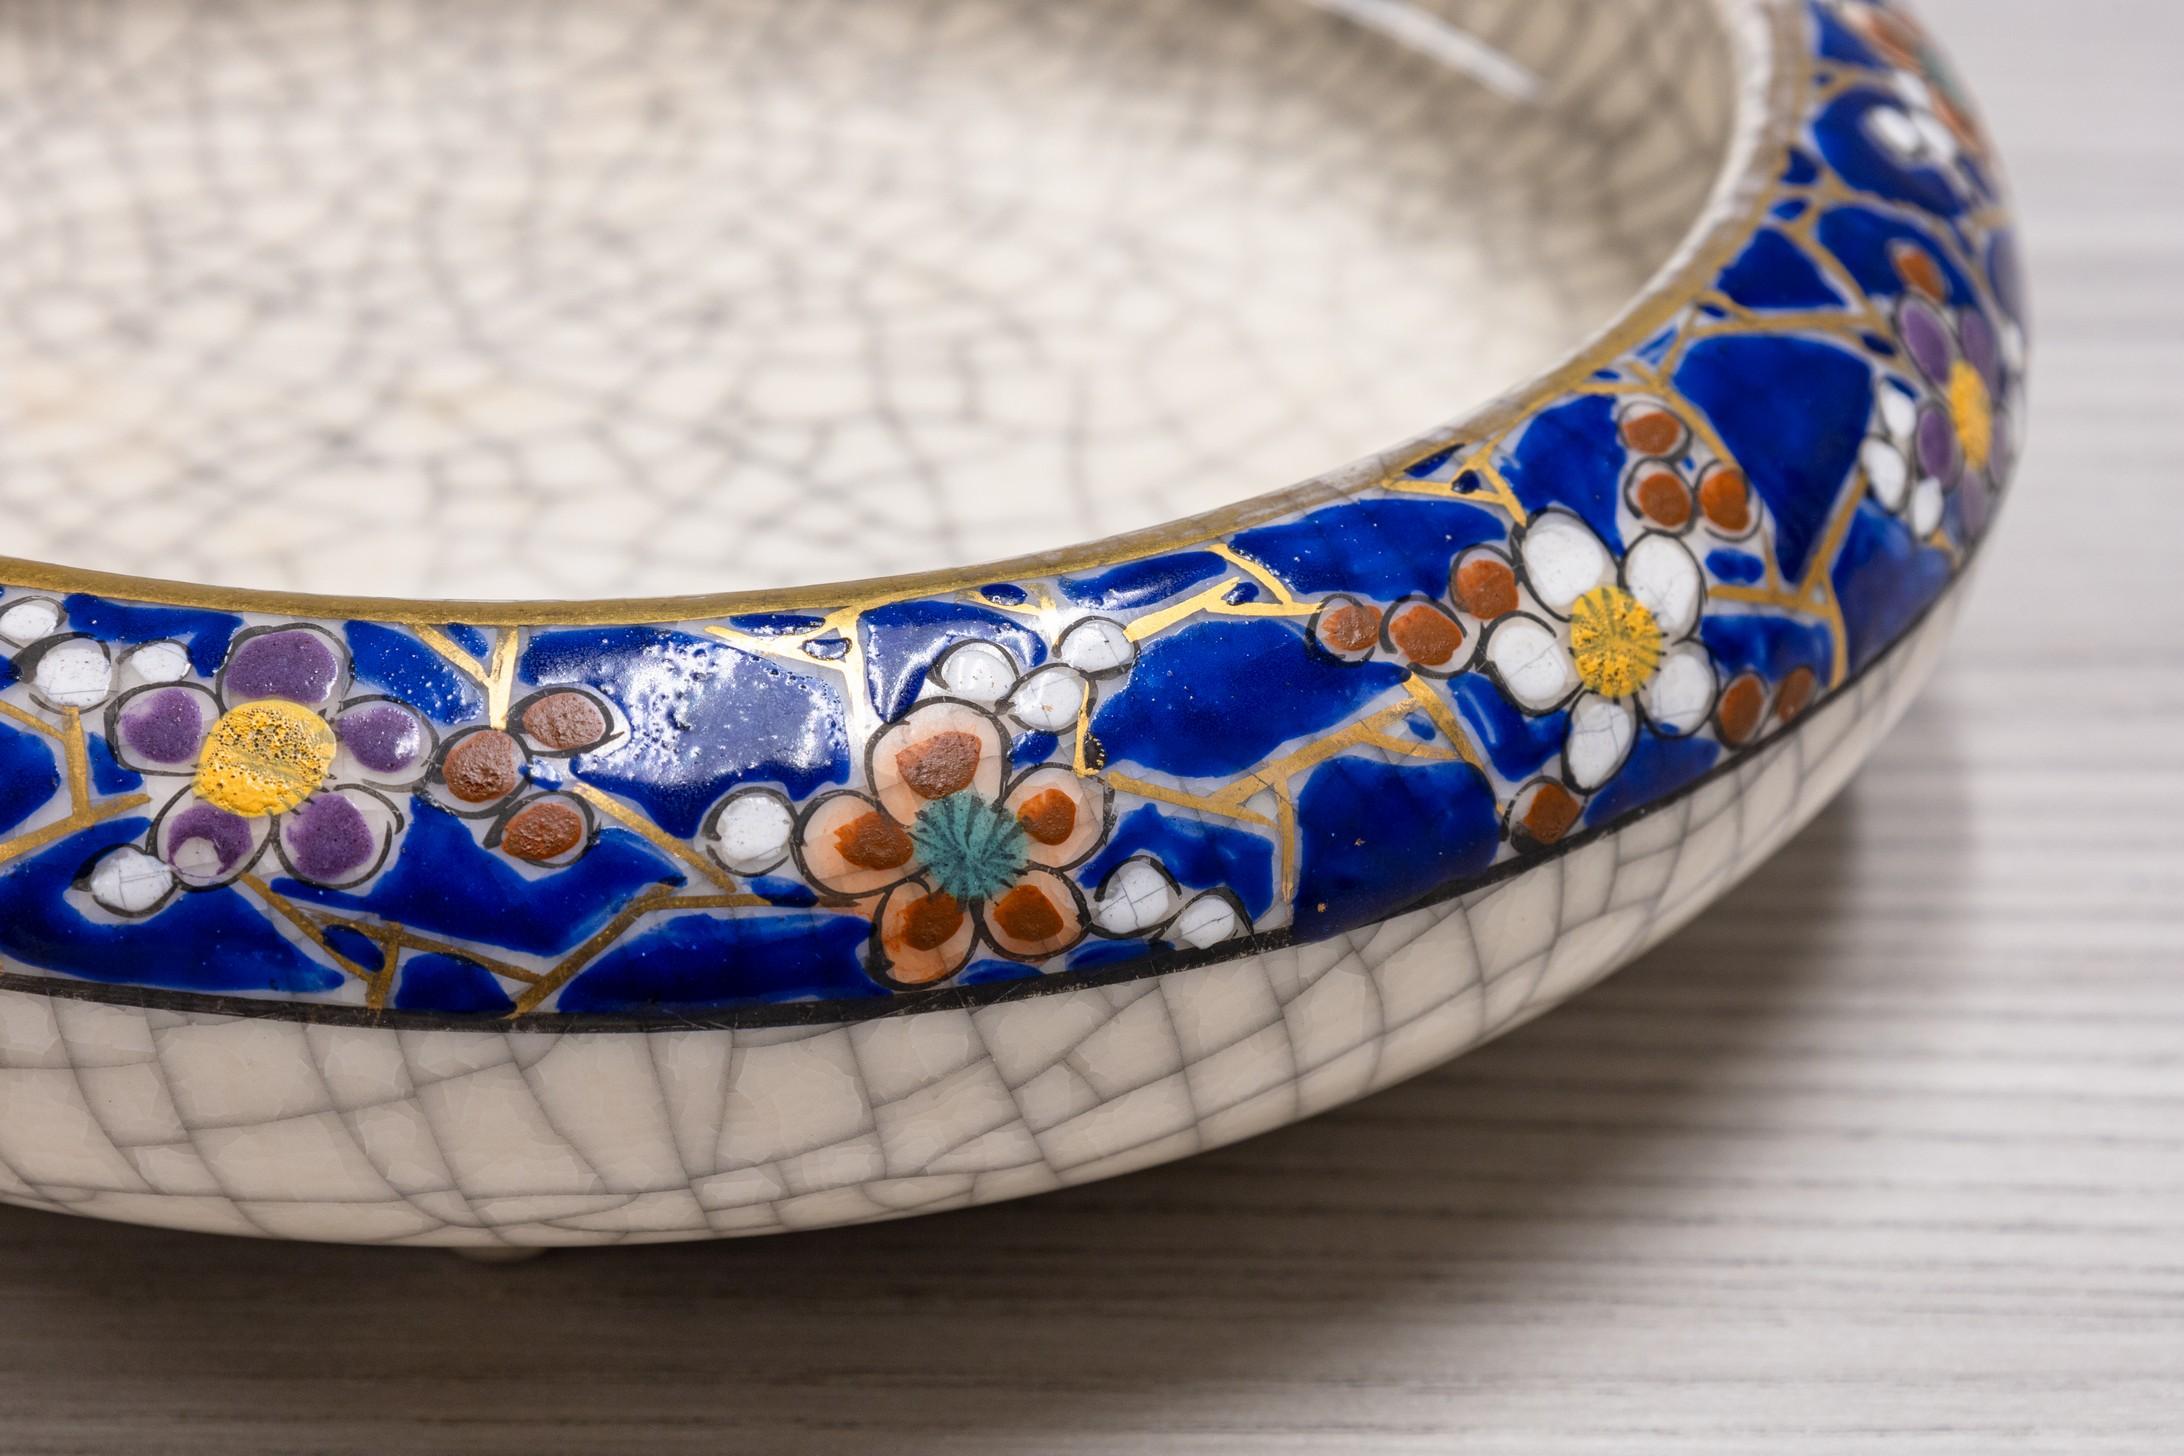 Il s'agit d'un bol ancien de Satsuma, caractérisé par sa riche glaçure bleu cobalt ornée de motifs floraux complexes en or et multicolores. L'intérieur du bol est recouvert d'une délicate glaçure craquelée qui met en valeur le savoir-faire artisanal